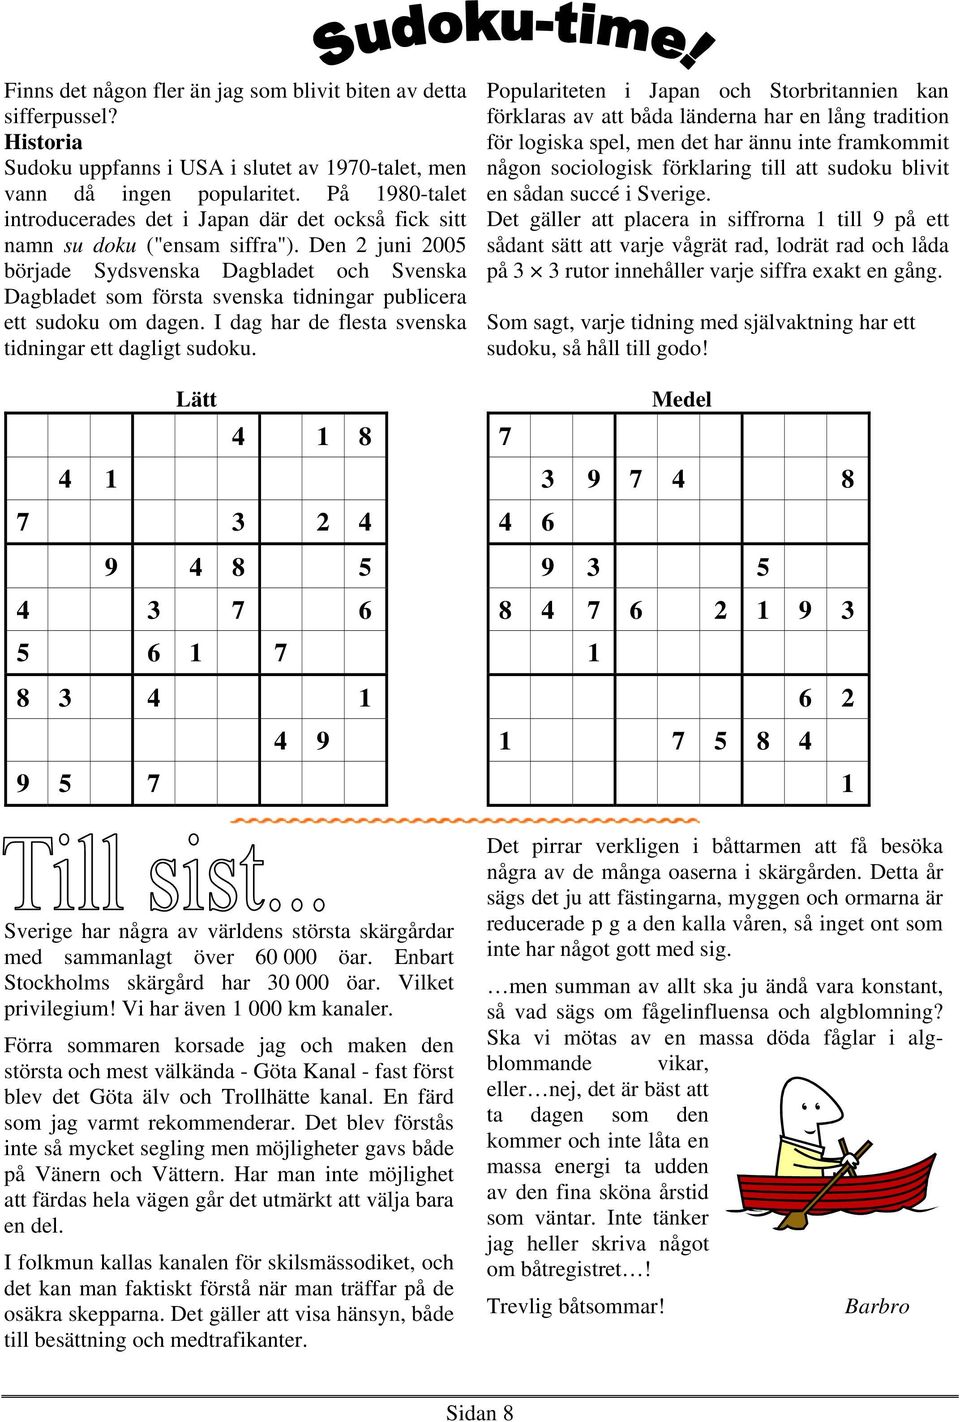 Den 2 juni 2005 började Sydsvenska Dagbladet och Svenska Dagbladet som första svenska tidningar publicera ett sudoku om dagen. I dag har de flesta svenska tidningar ett dagligt sudoku.